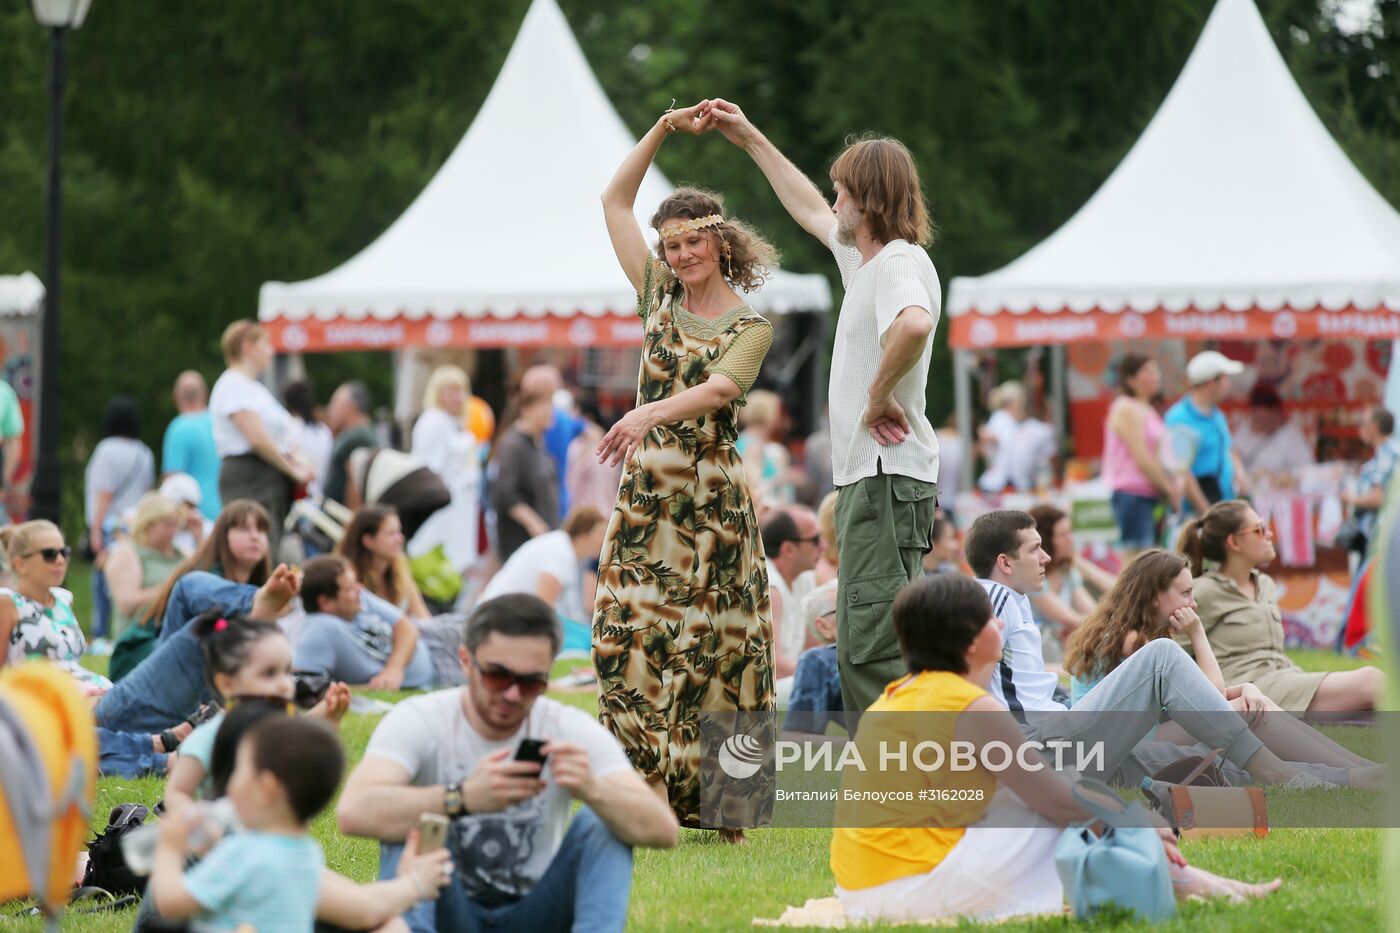 Фестиваль "Русское поле"